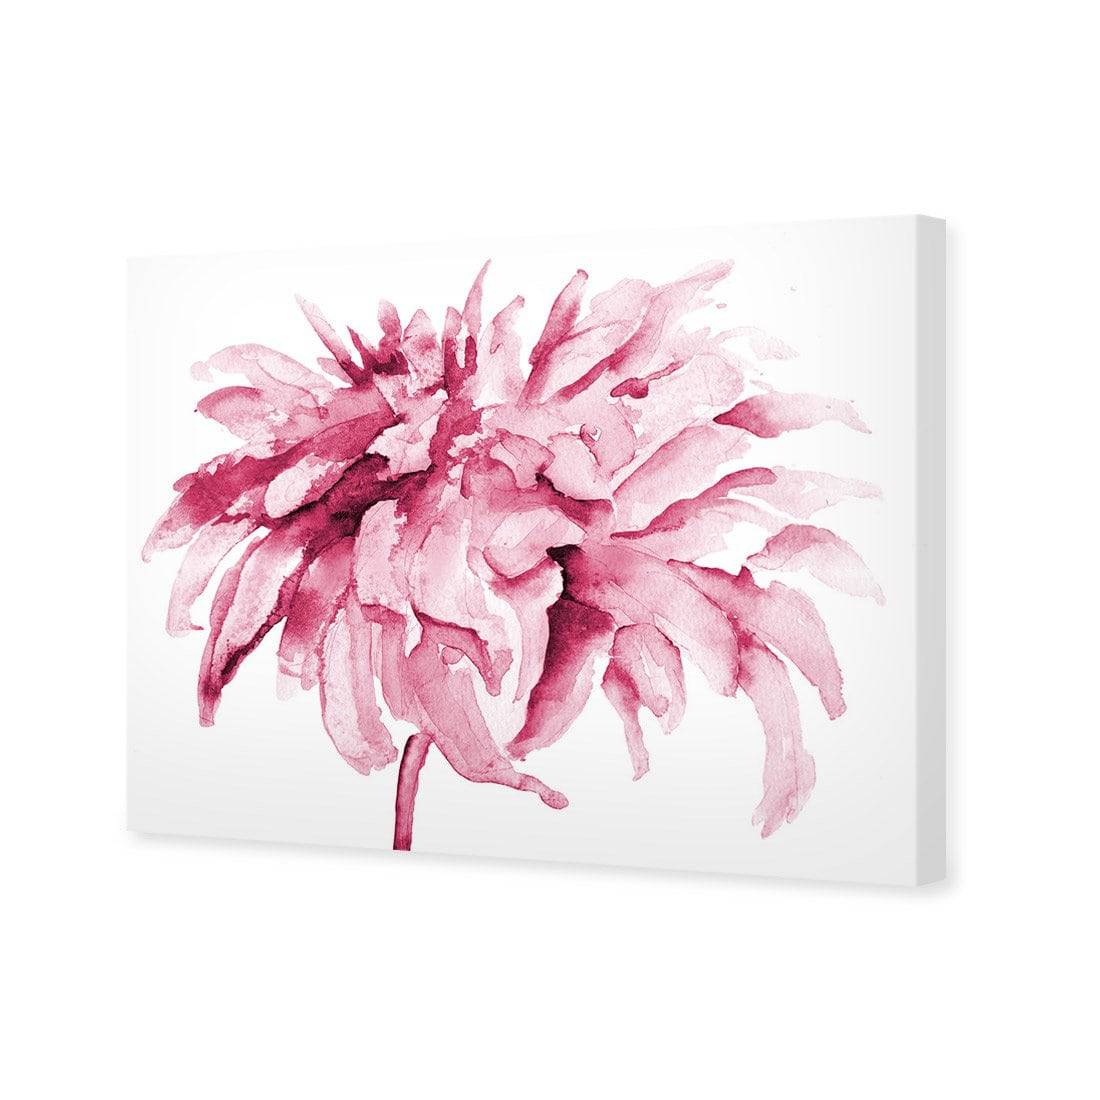 Fairy Floss, Pink Canvas Art-Canvas-Wall Art Designs-45x30cm-Canvas - No Frame-Wall Art Designs